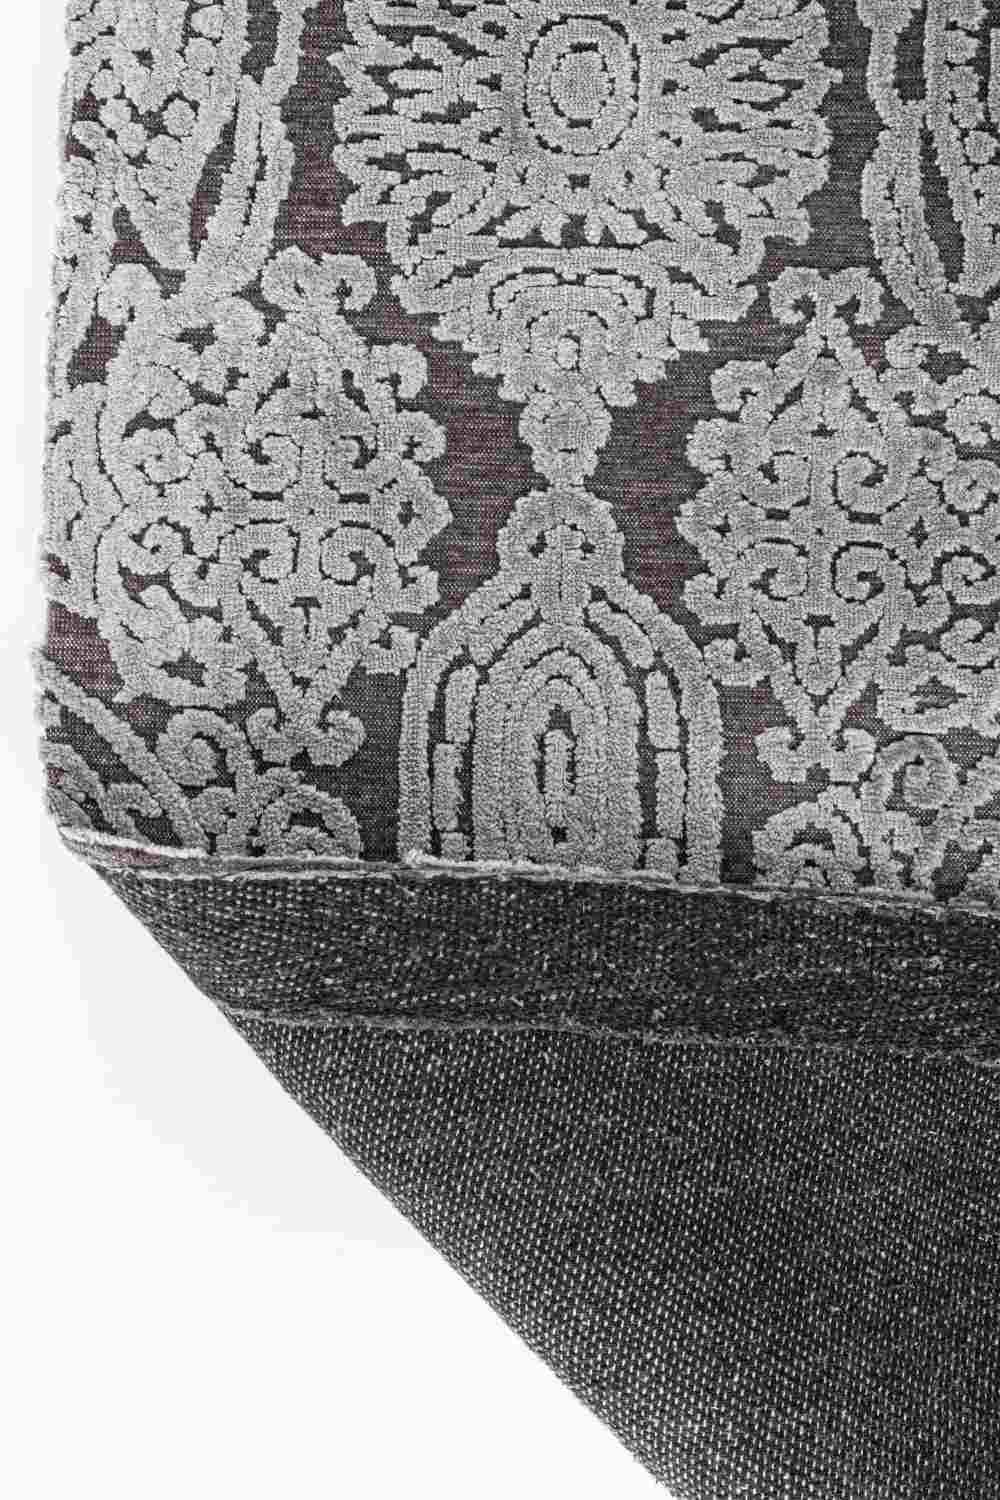 Der Teppich Dehli überzeugt mit seinem klassischen Design. Gefertigt wurde die Vorderseite aus 100% Viskose und die Rückseite aus 100% Baumwolle. Der Teppich besitzt einen grauen Farbton und die Maße von 160x230 cm.